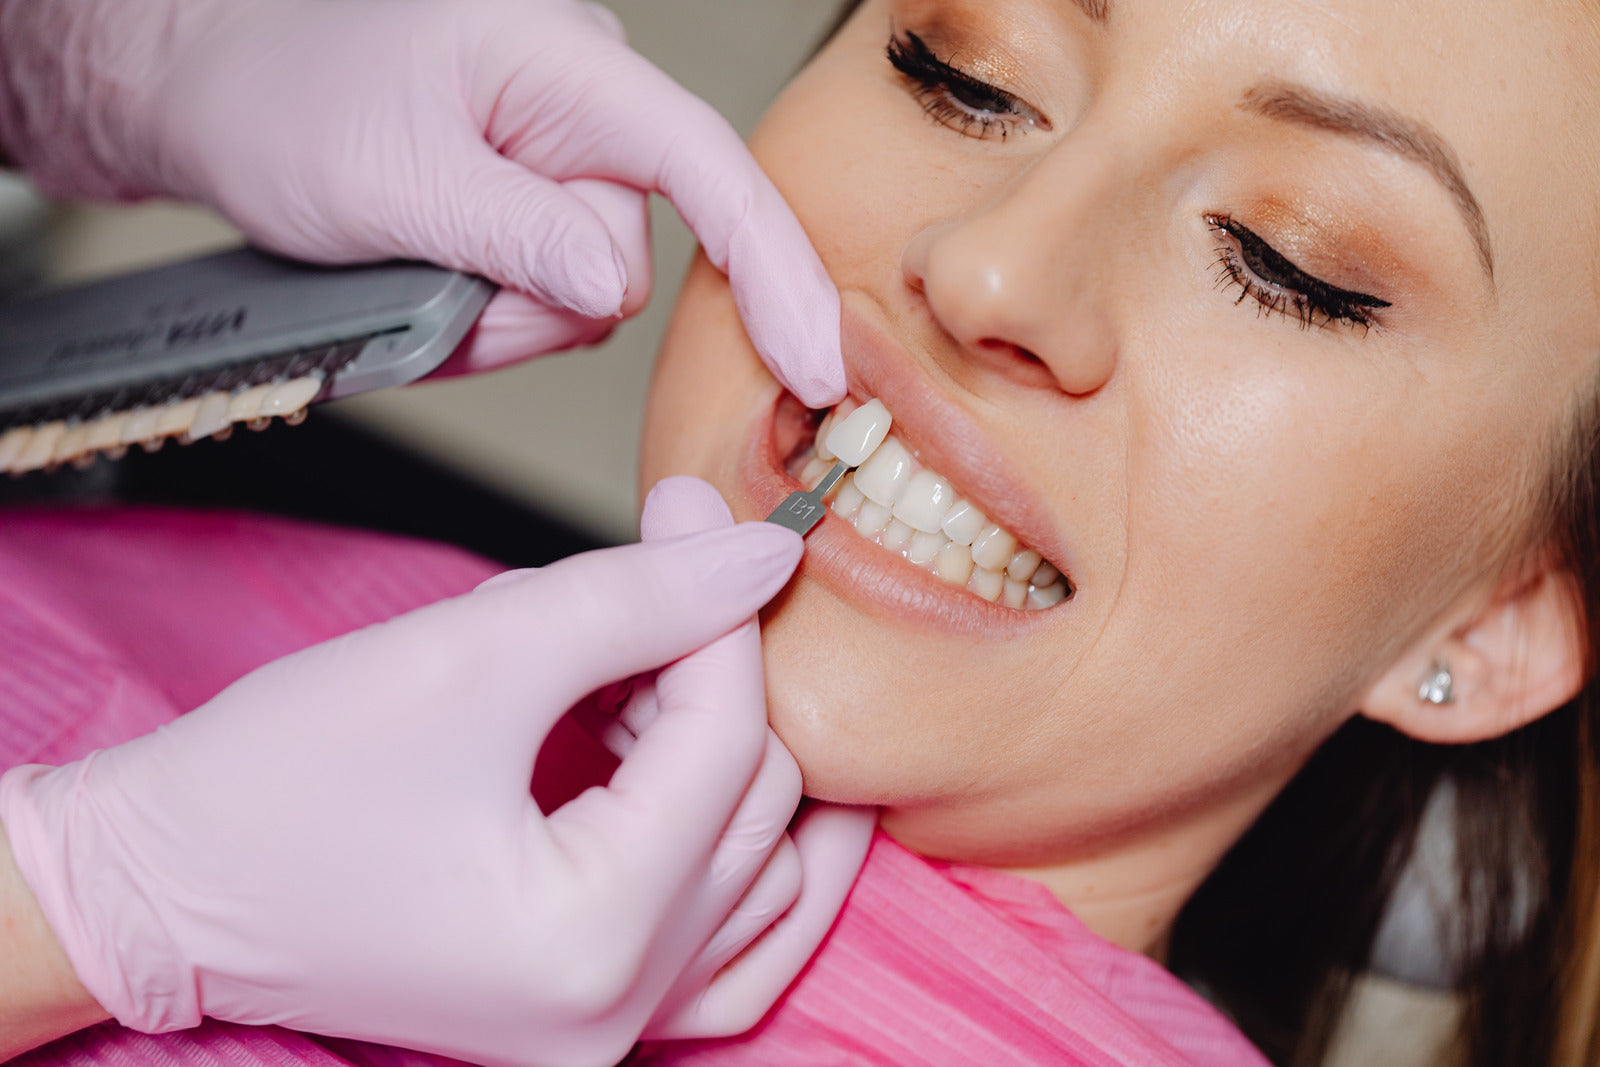 Professionelles Bleaching:  Zu Hause oder besser beim Zahnarzt?